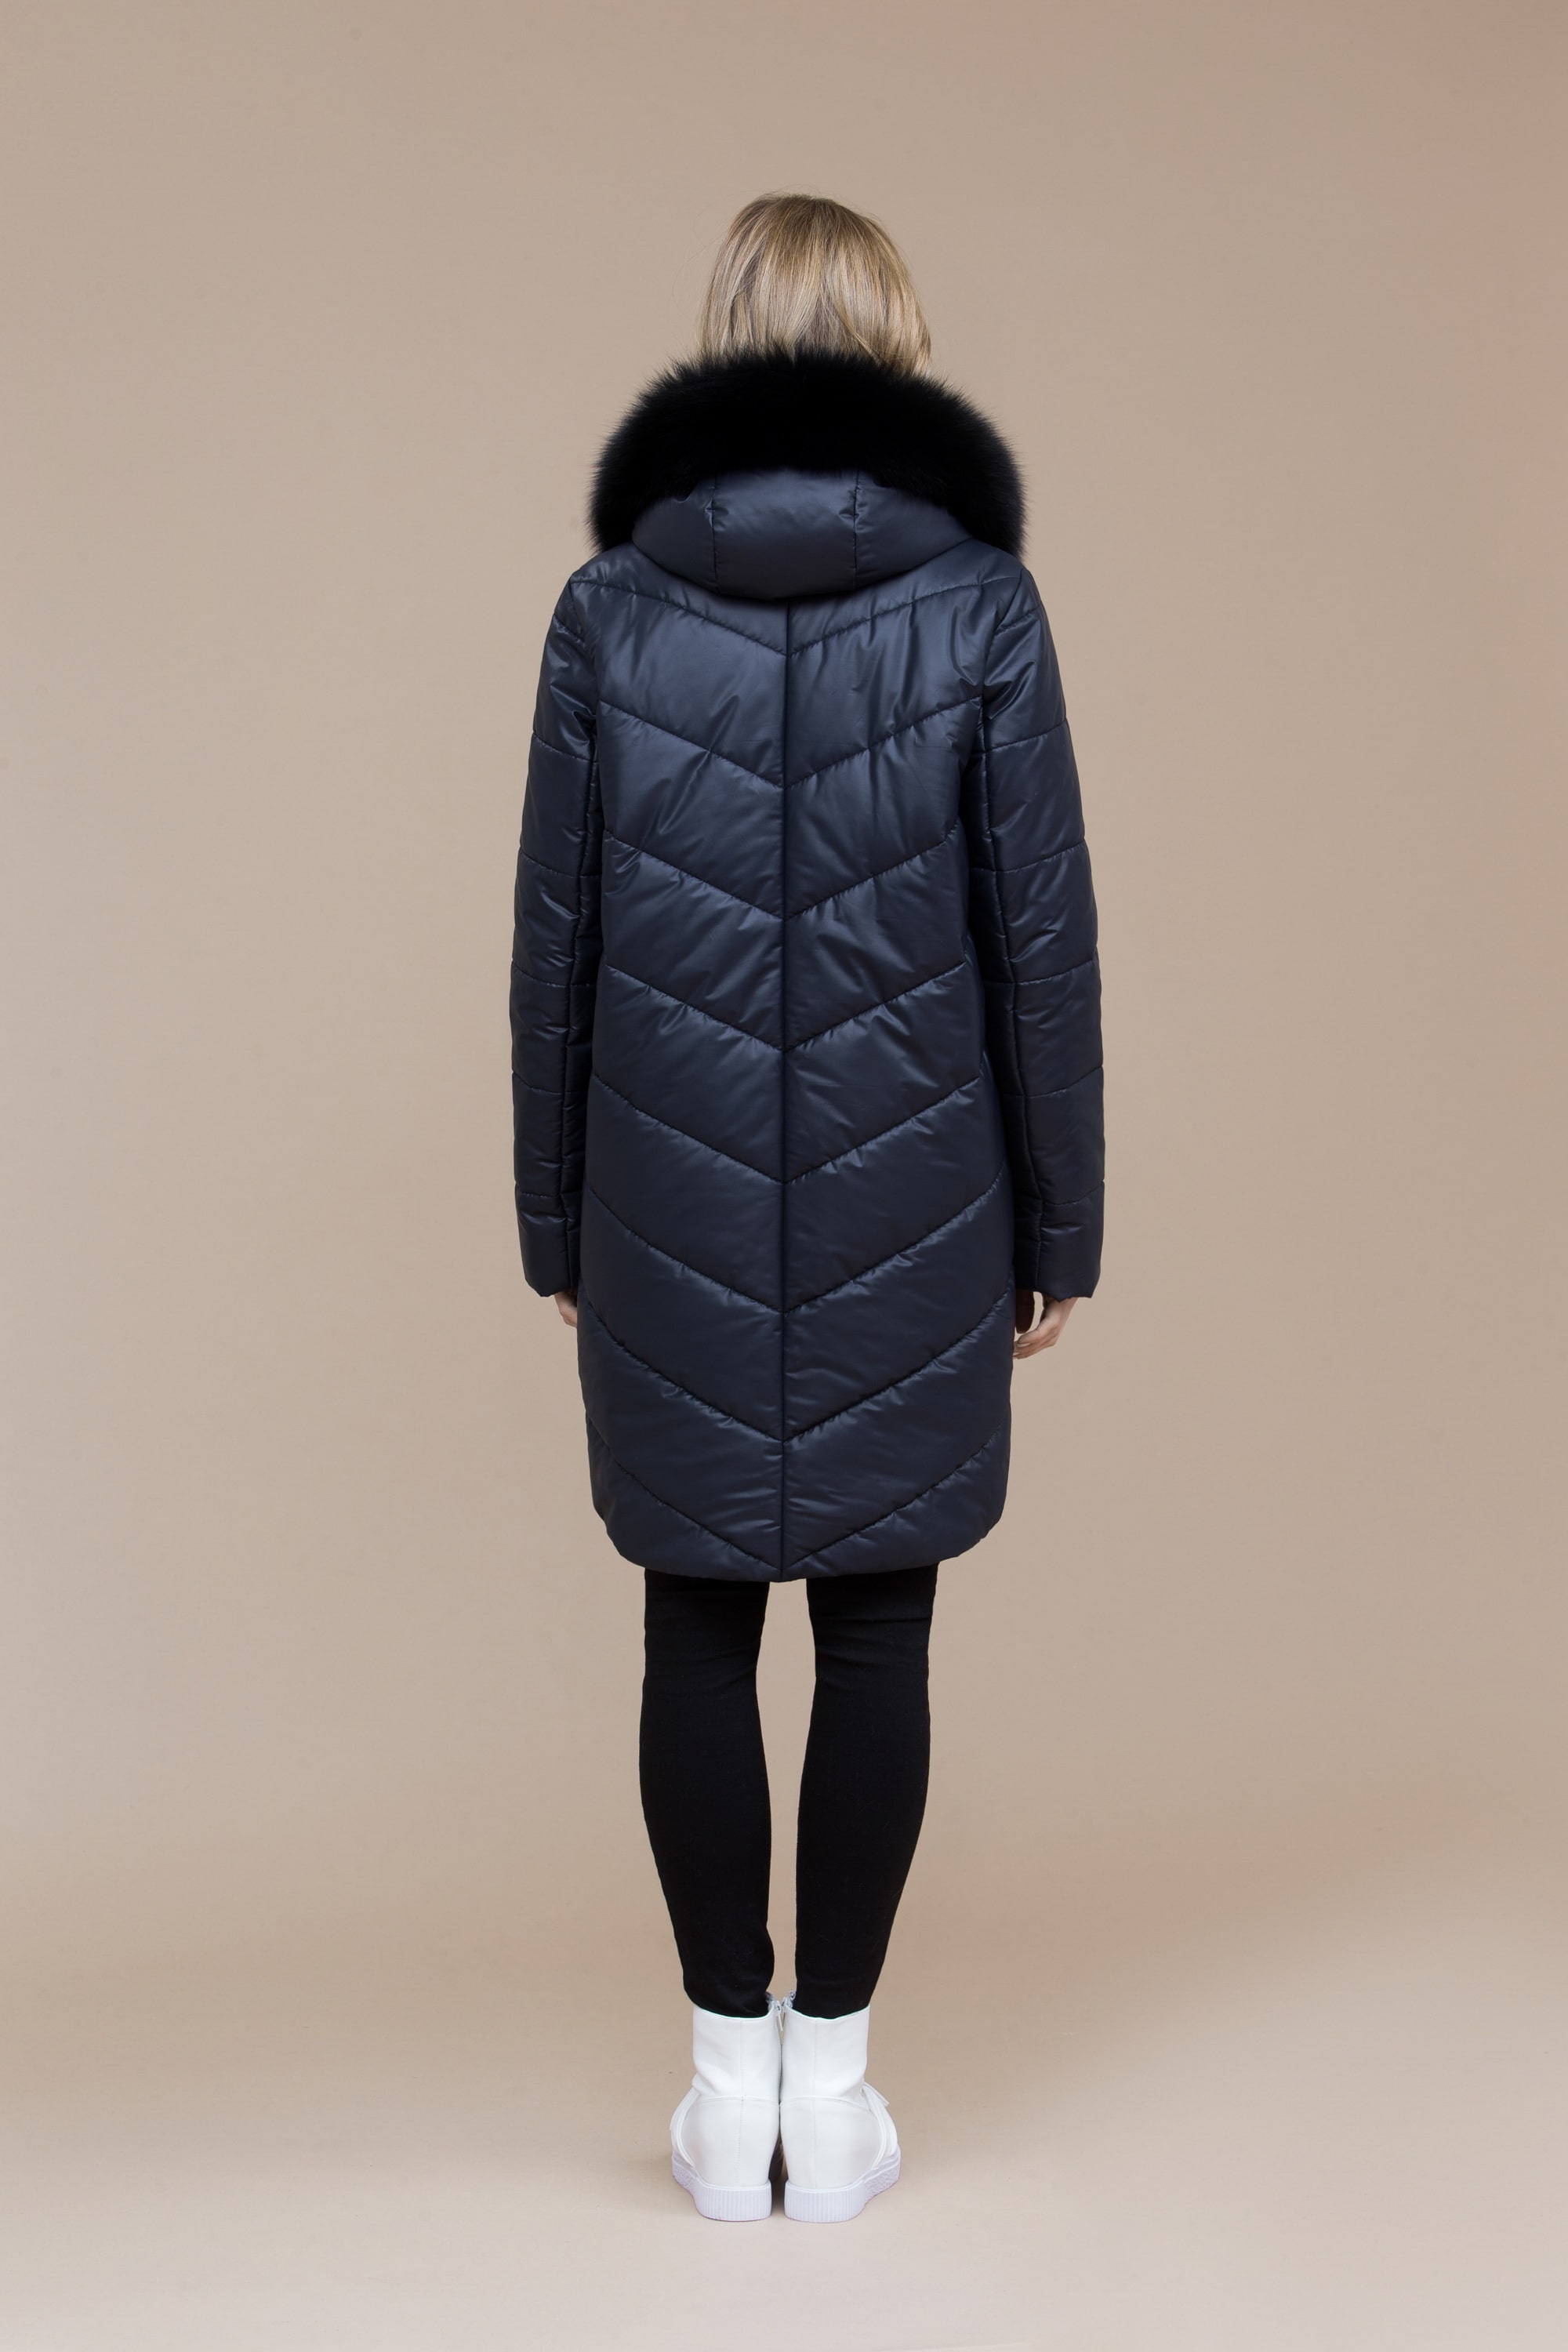 Пальто женское плащевое утепленное 5-8023-1. Фото 3.